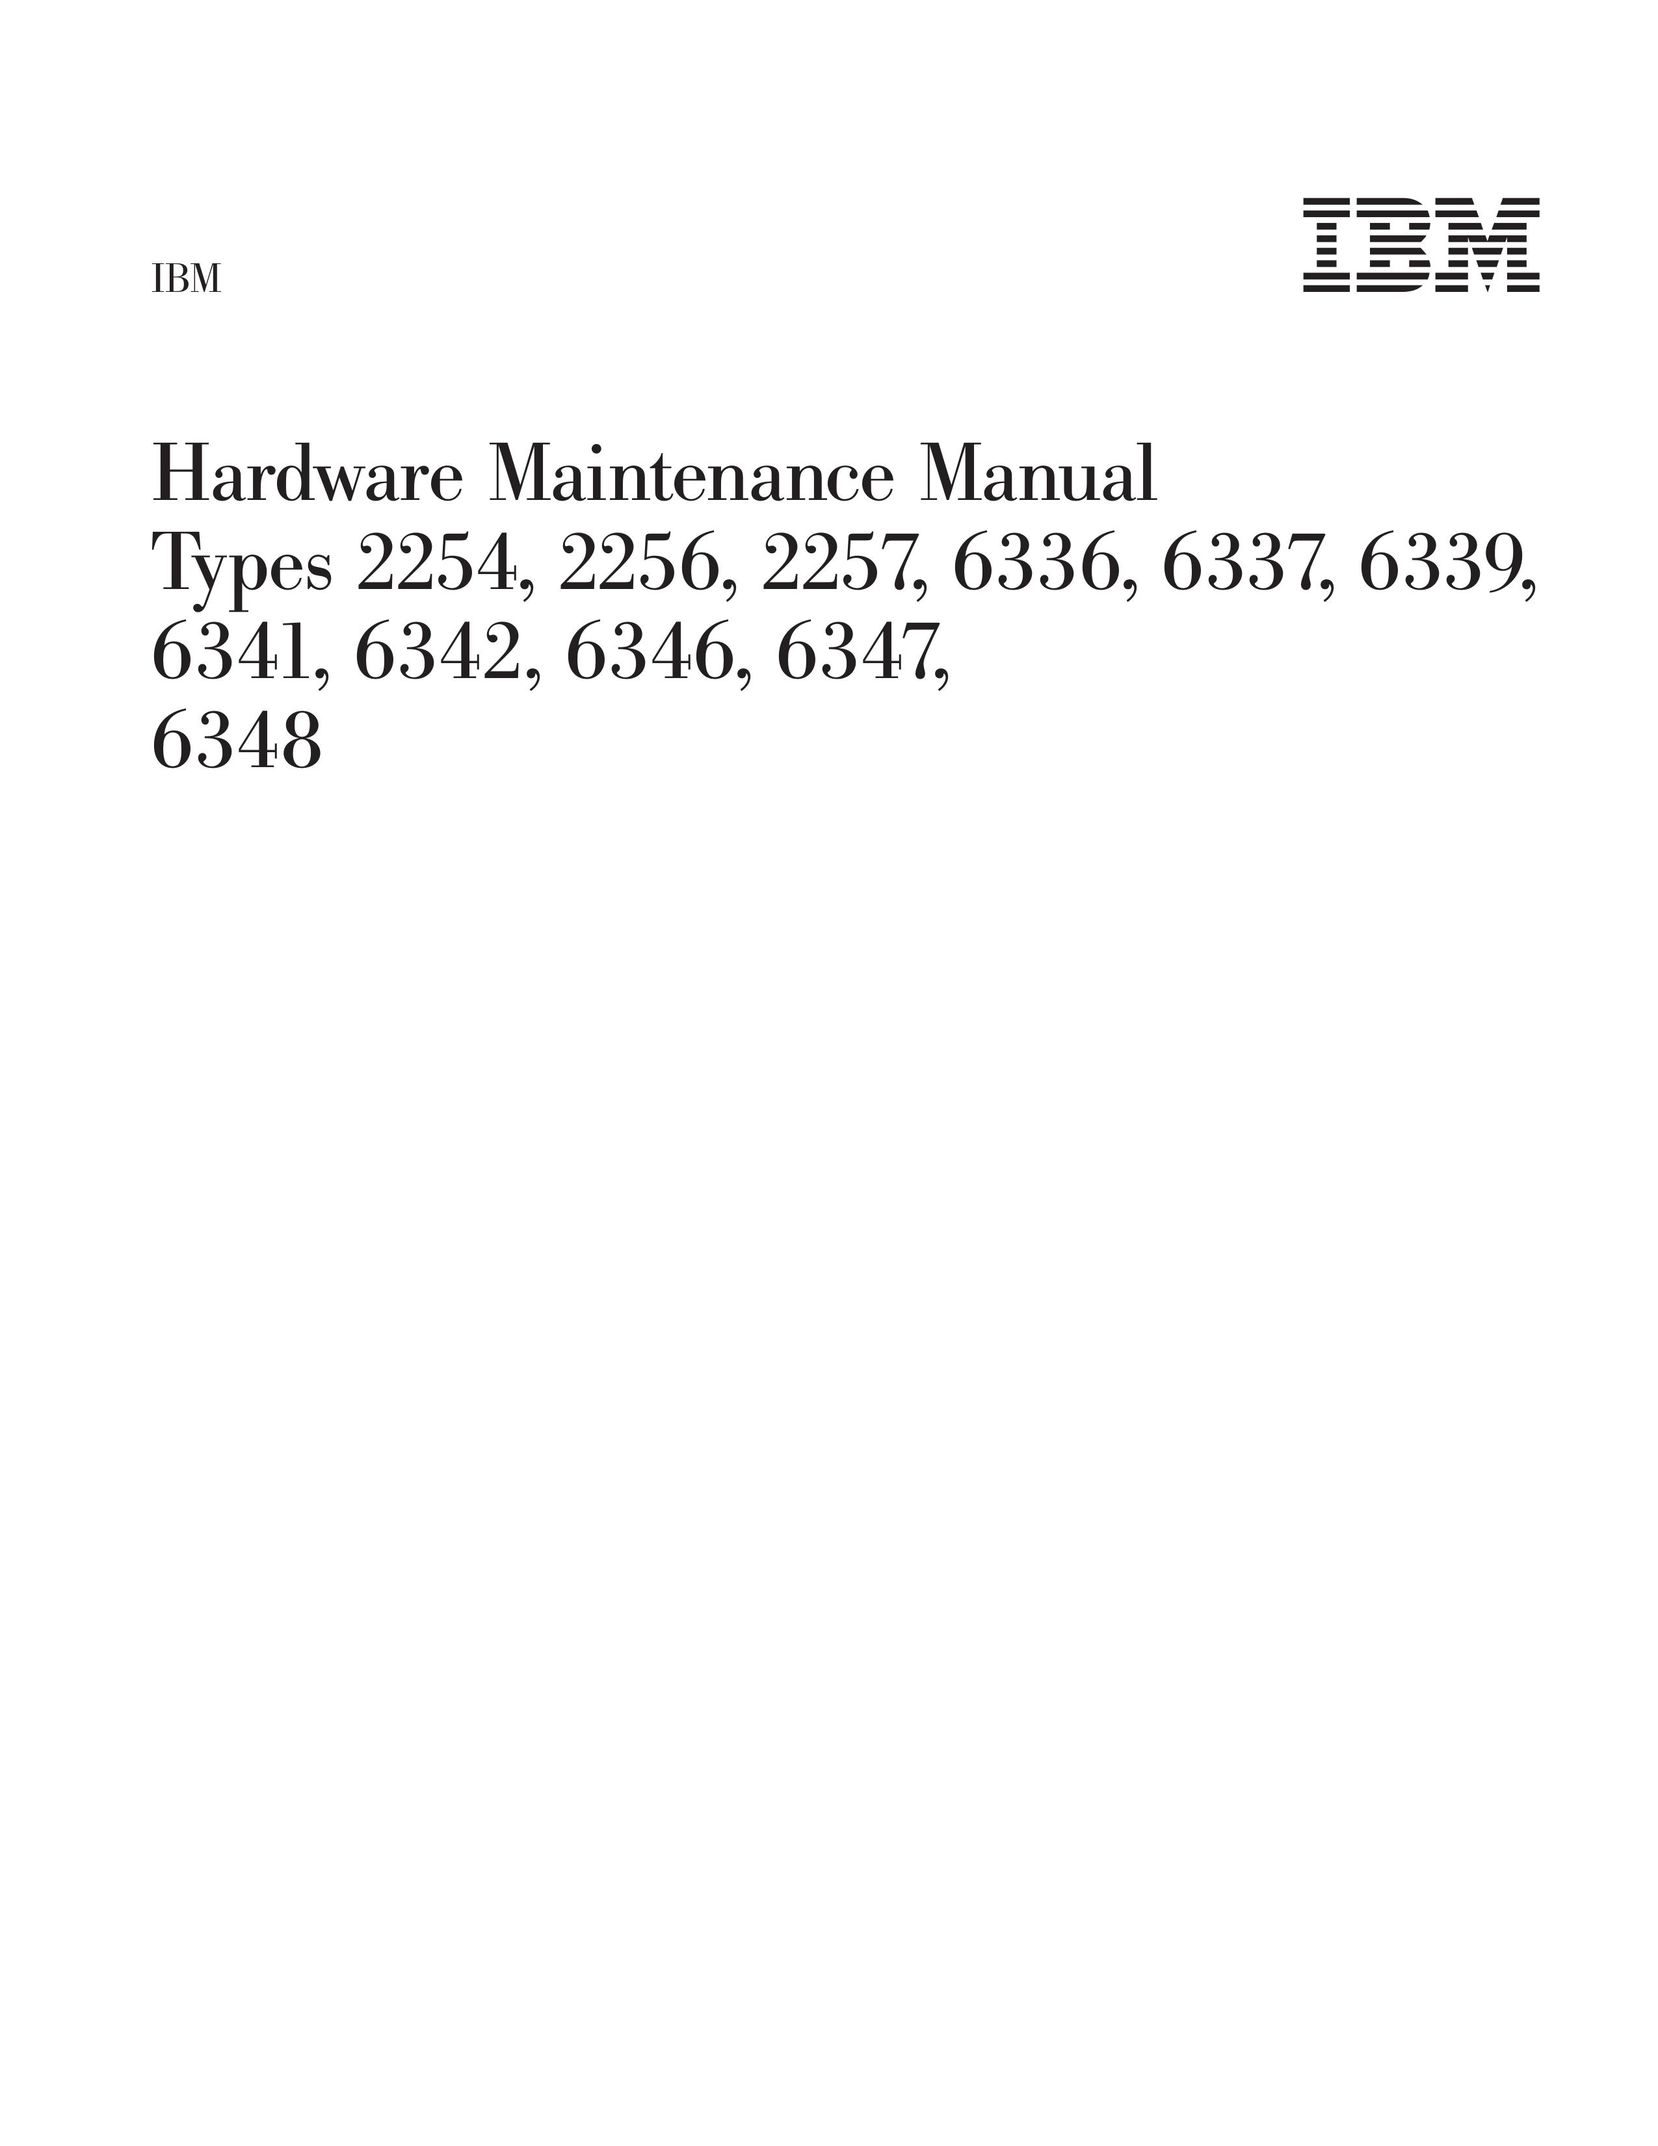 IBM 6341 Computer Hardware User Manual